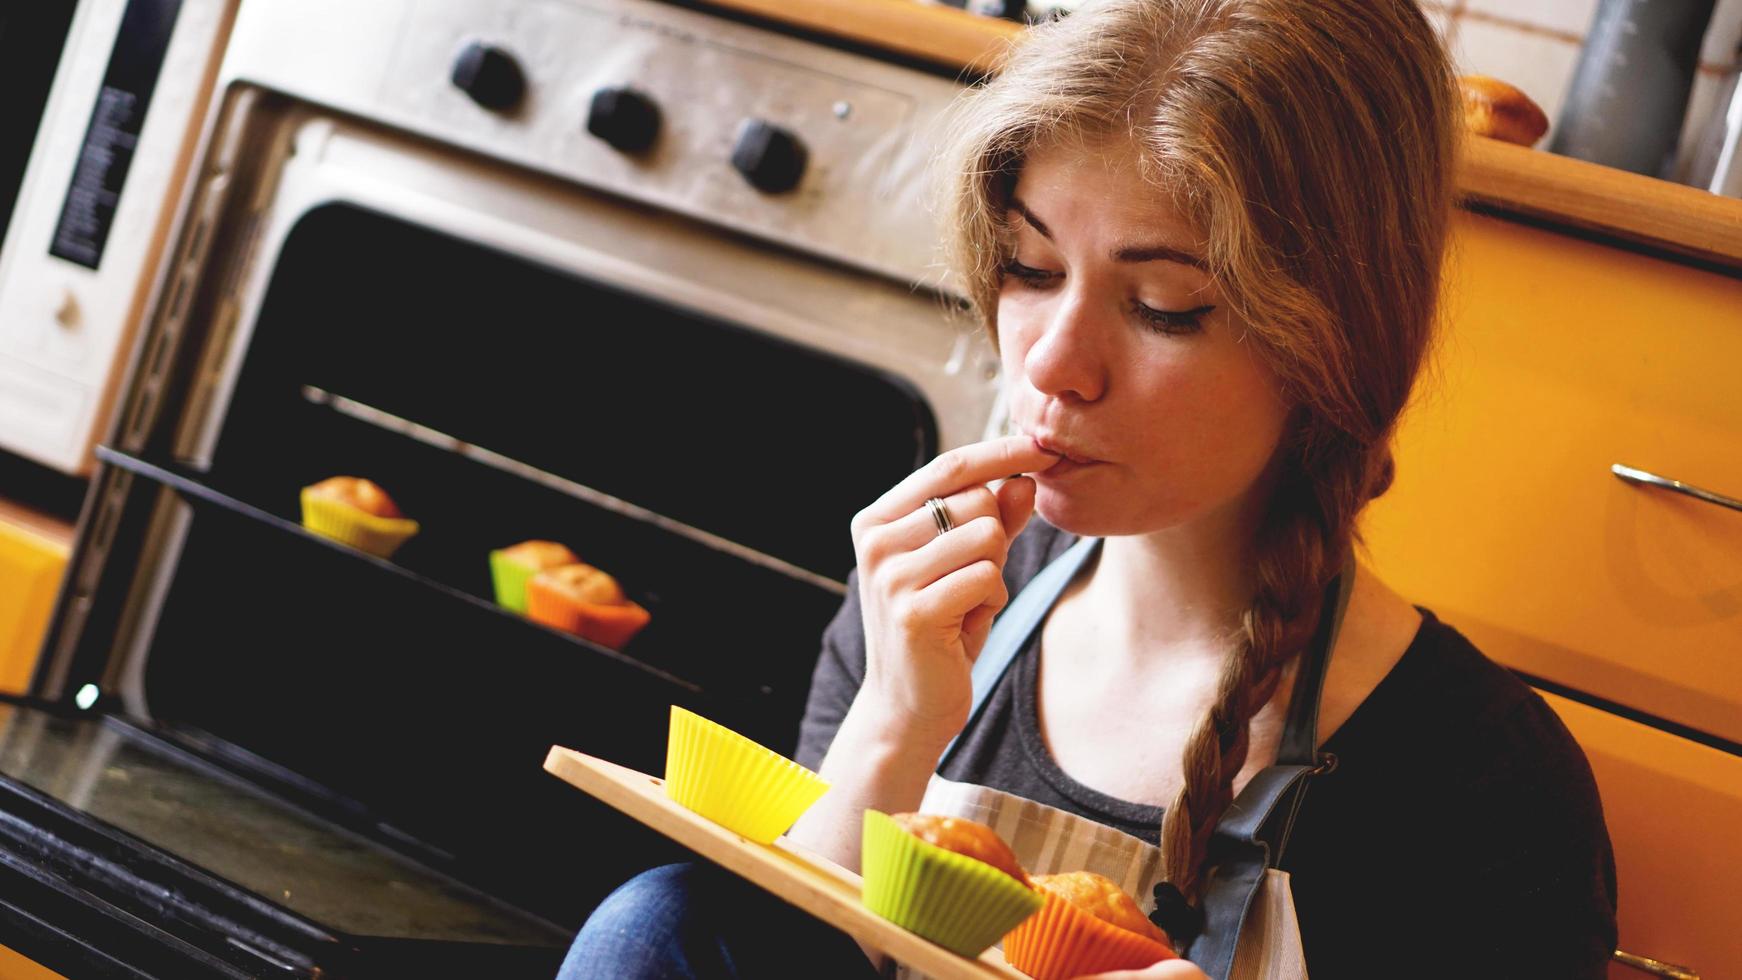 linda mulher loira mostrando muffins enquanto comia um na cozinha foto